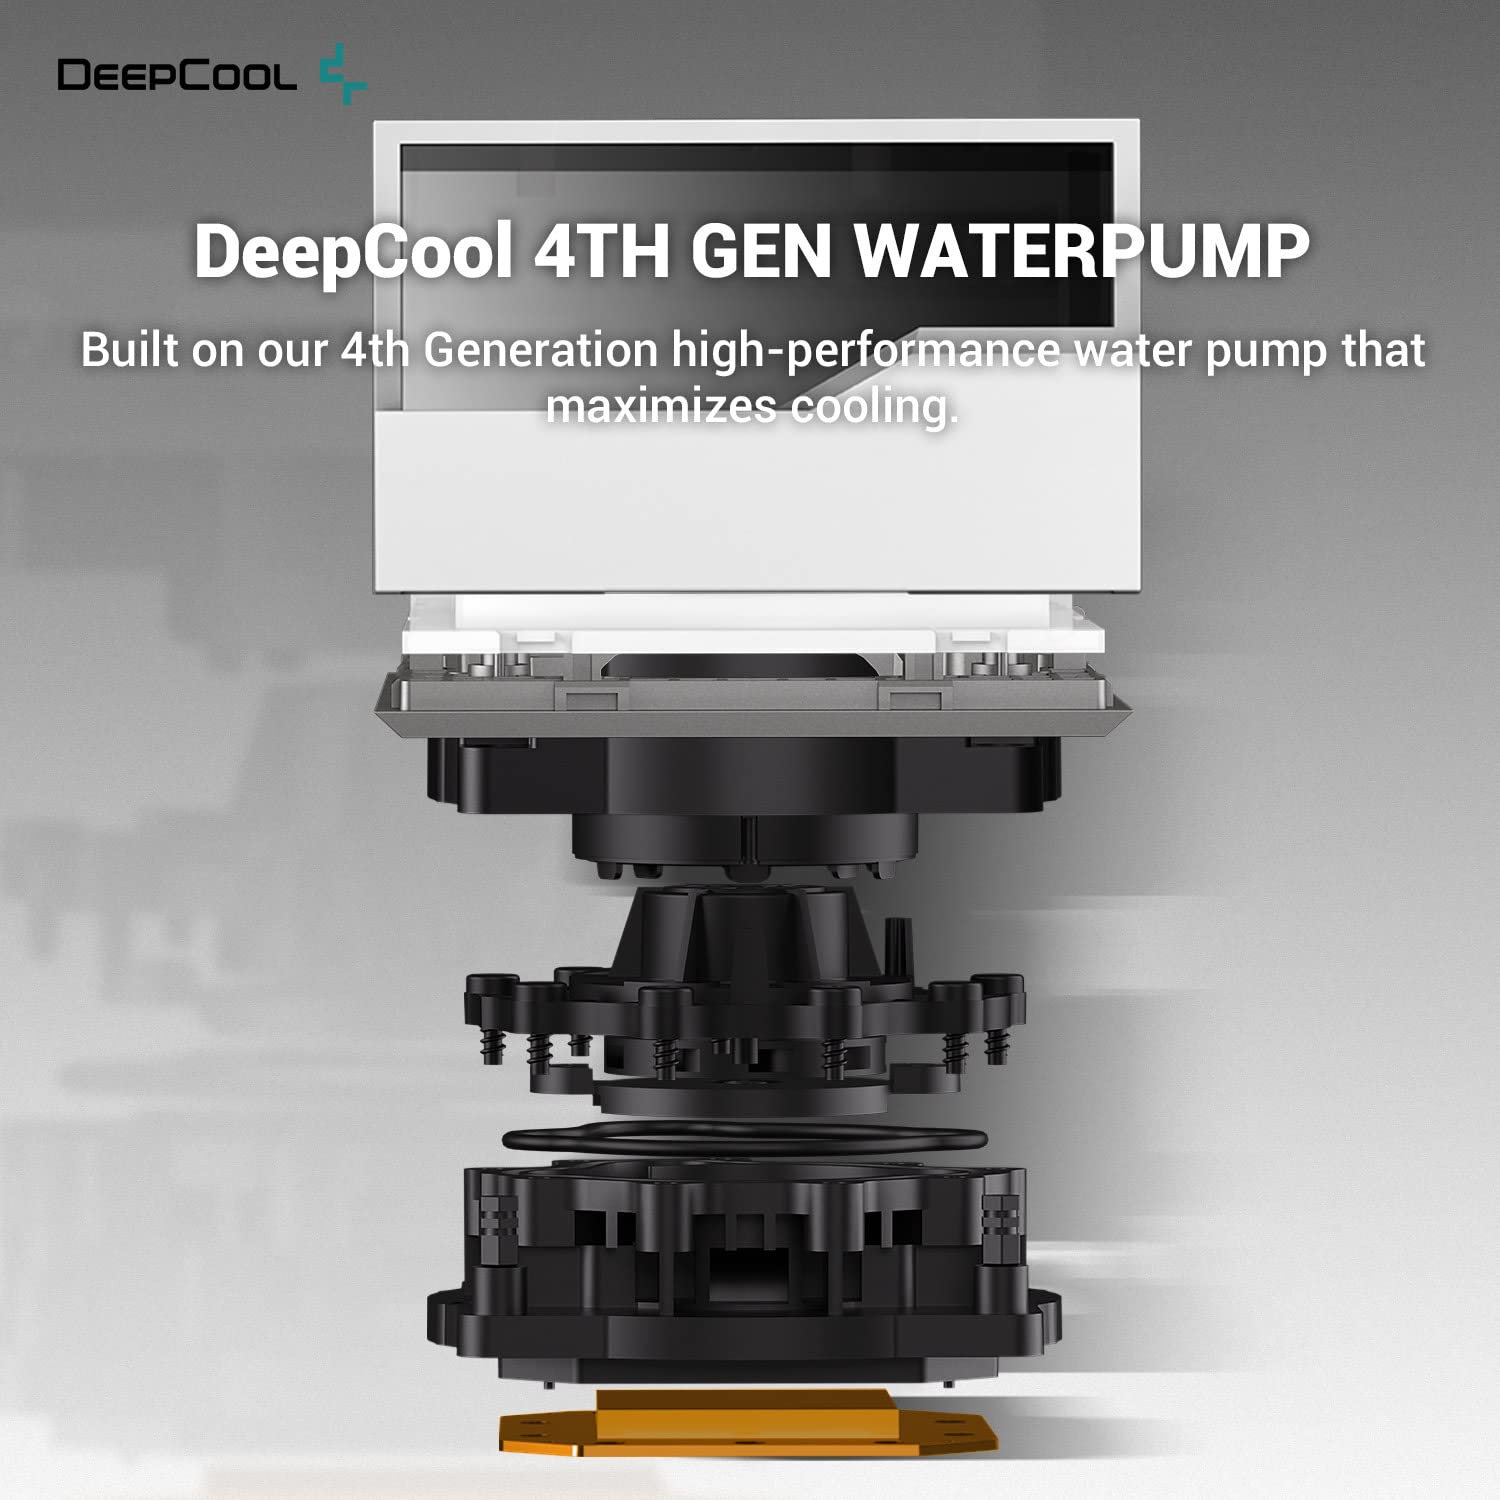 DeepCool Liquid Cooler LT520 240mm White - Geek Tech